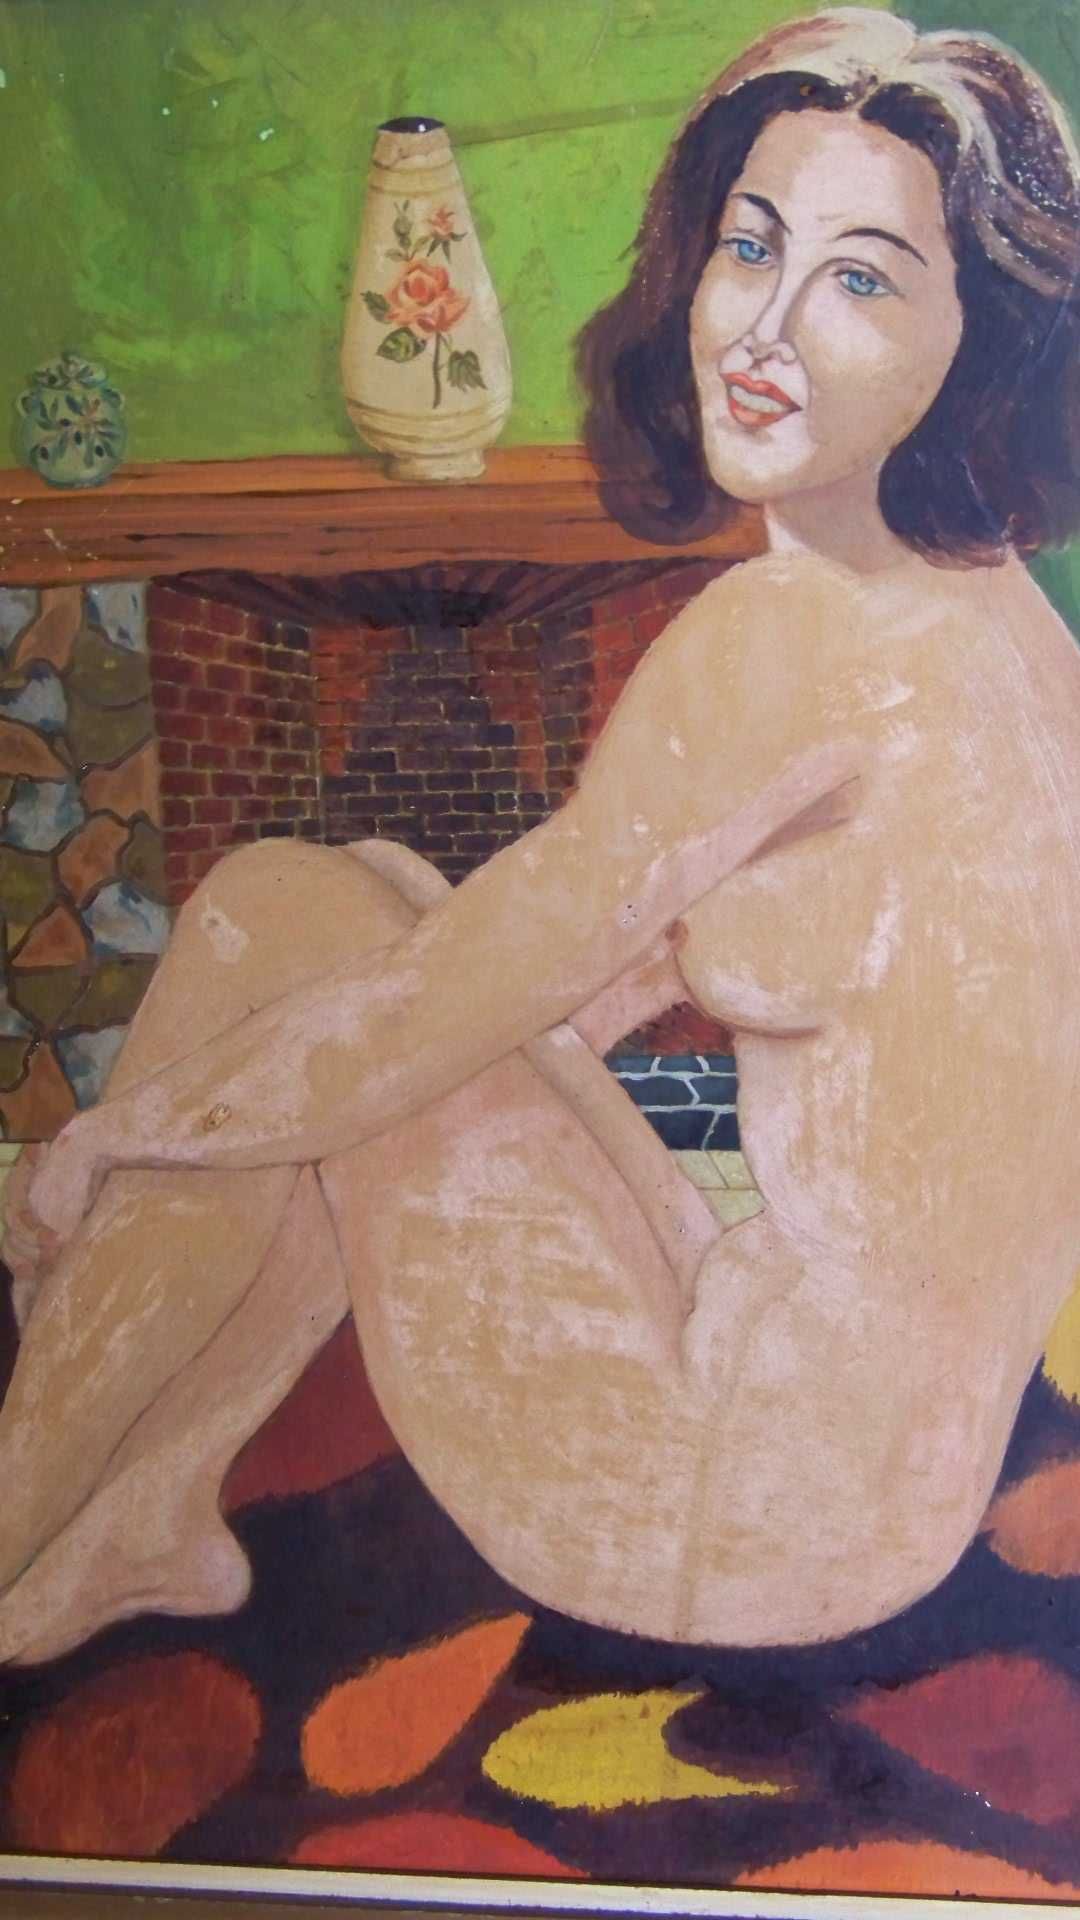 tablou nud pictura ulei pe placaj 80-60 cm